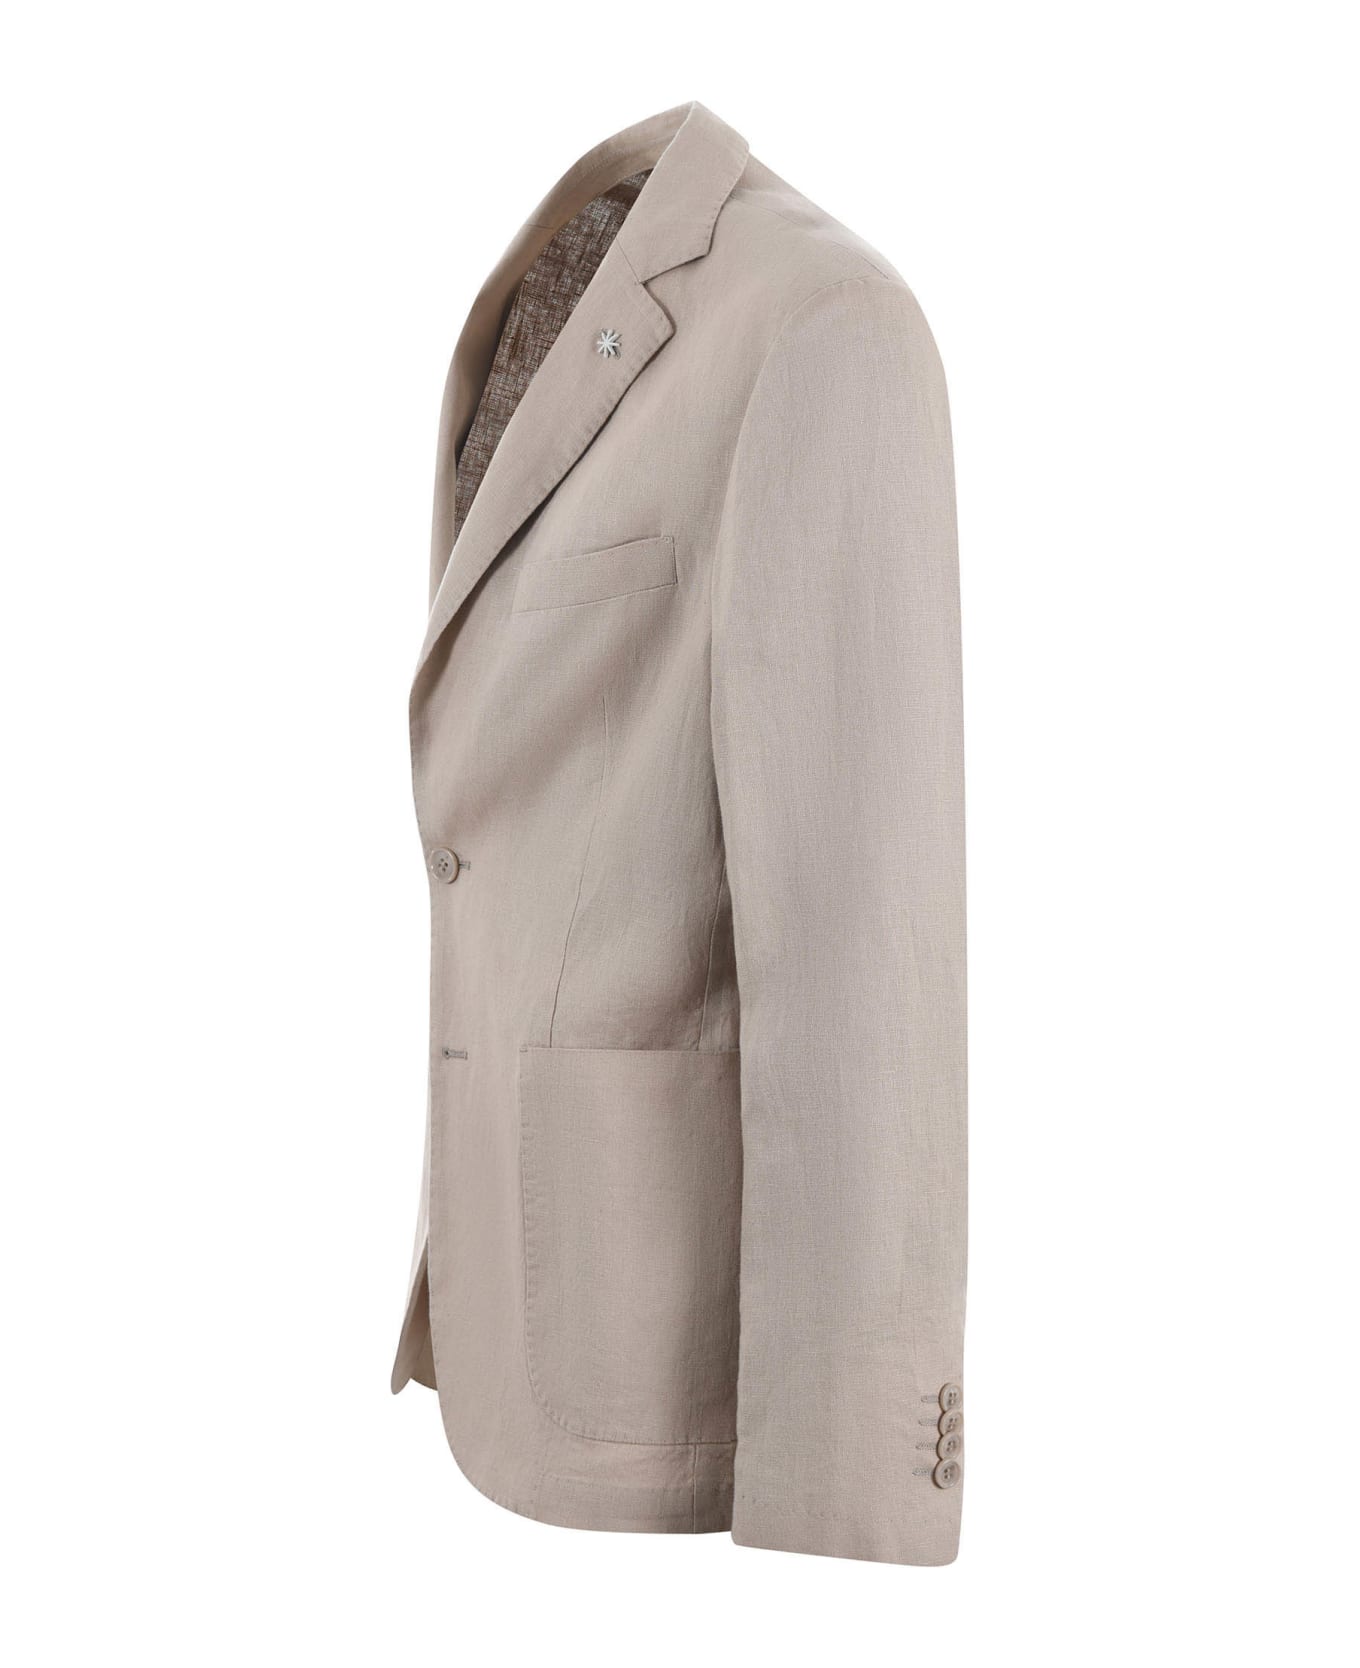 Manuel Ritz Suit - Beige スーツ